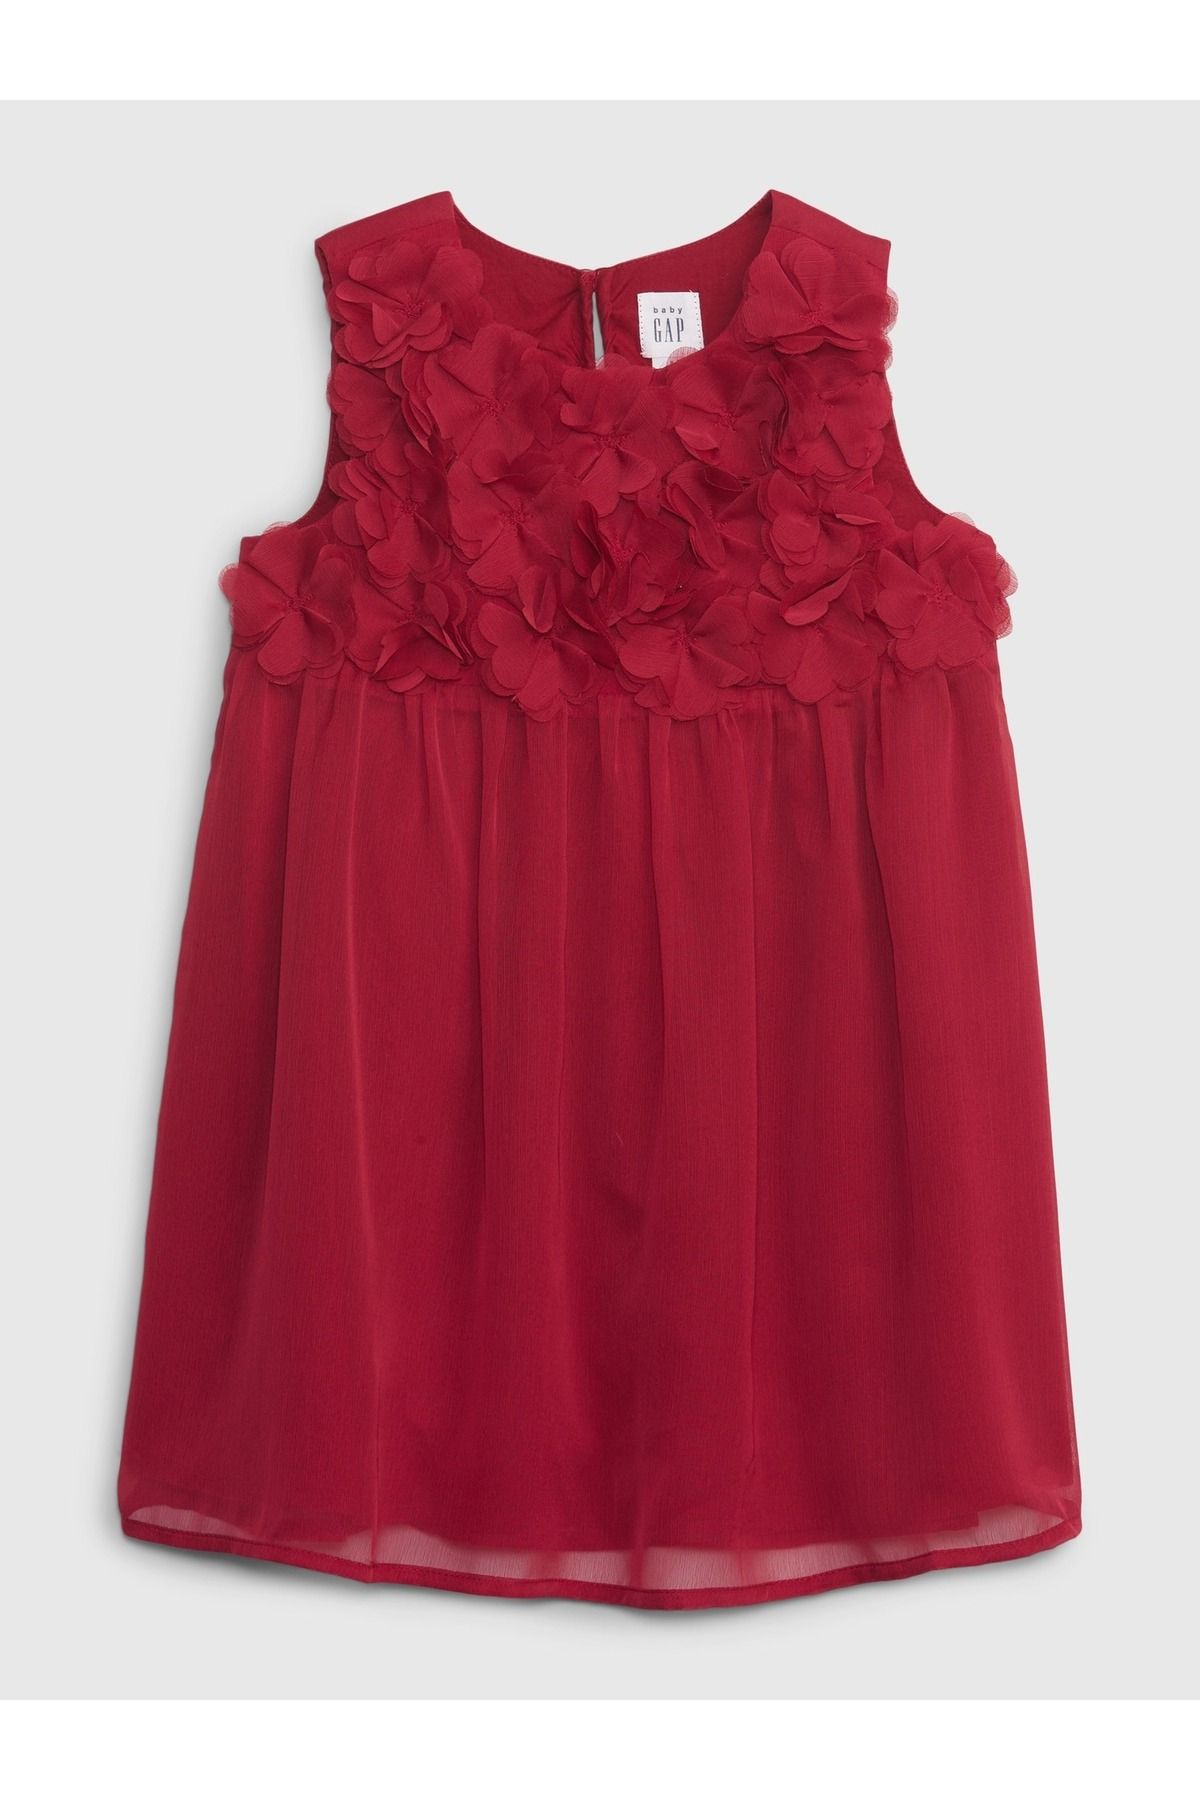 GAP Kız Bebek Kırmızı Çiçek Motifli Elbise